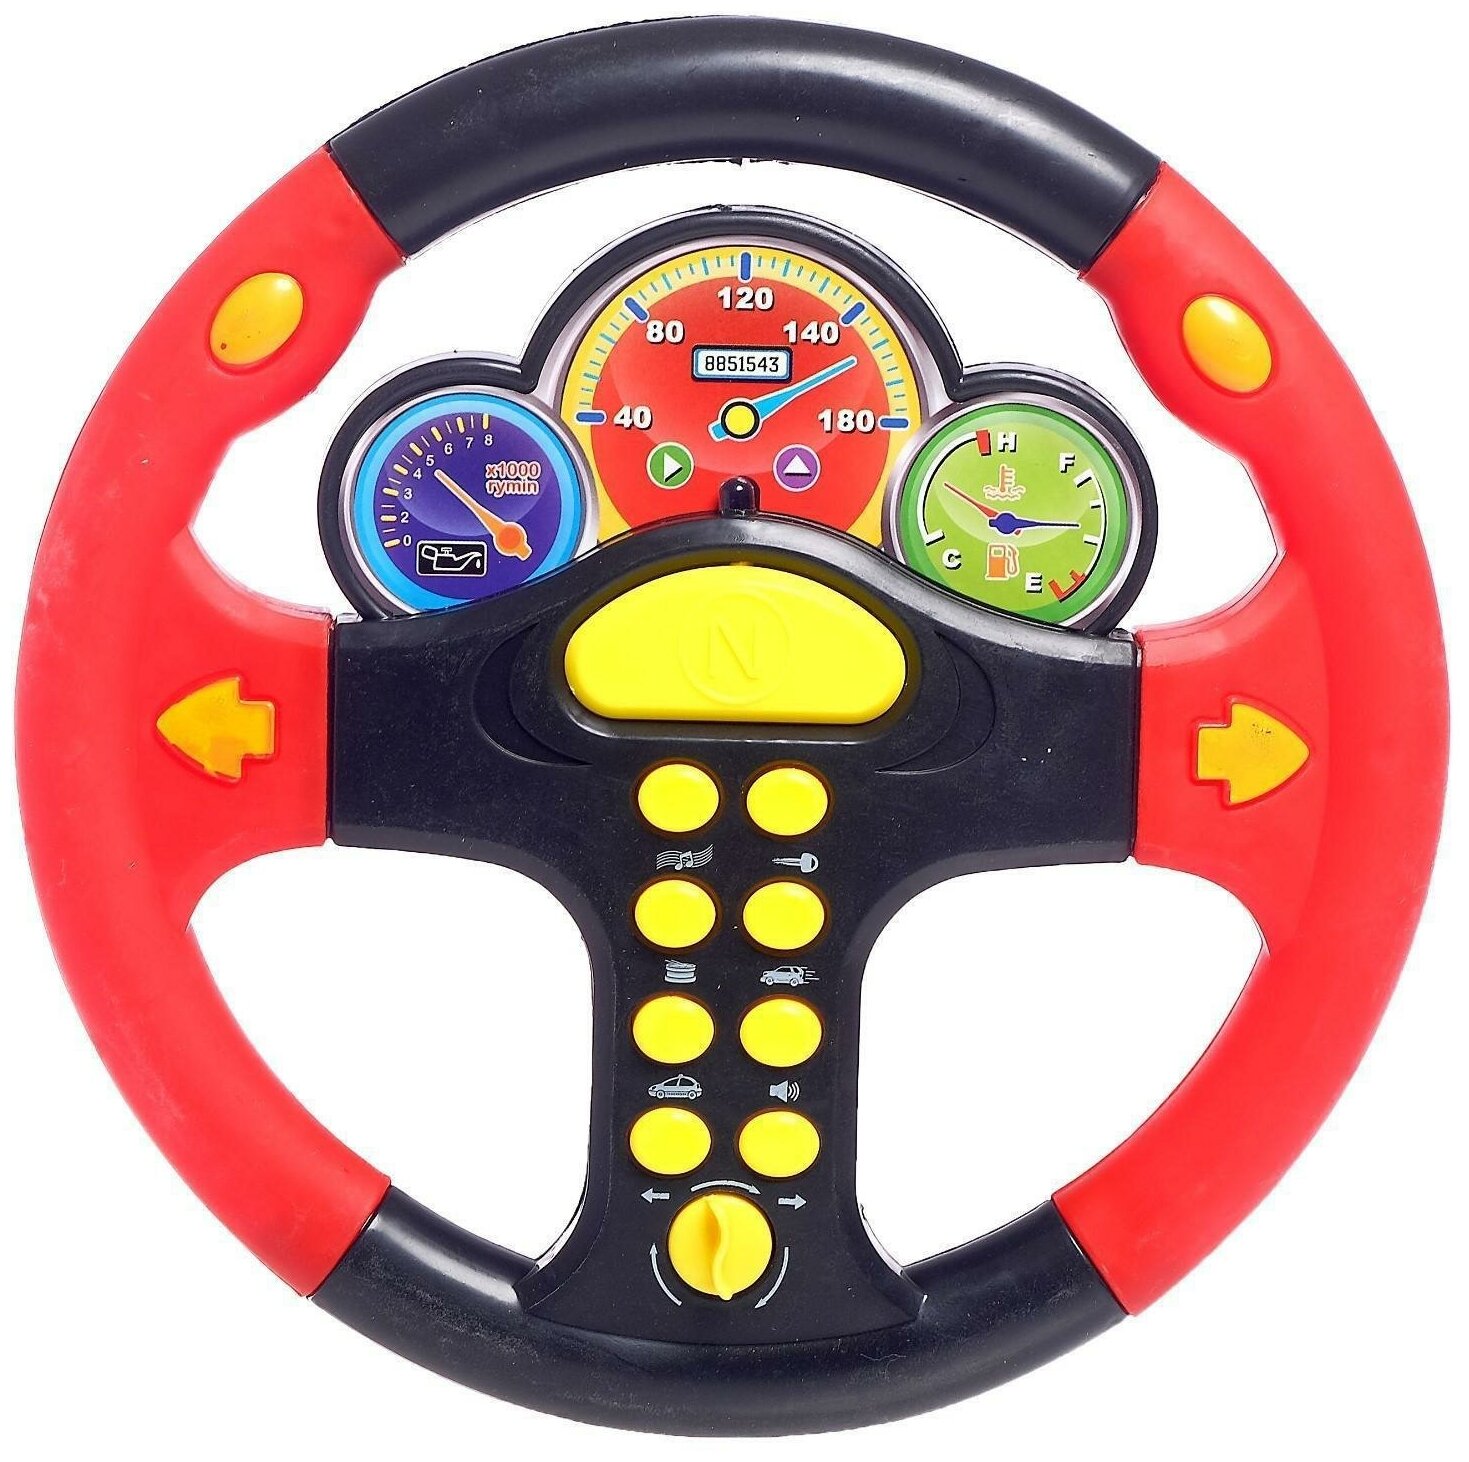 Игрушка для детей интерактивный музыкальный руль для развития малышей, со светом и звуком, 2 цвета, 0582А-11/OBL684514